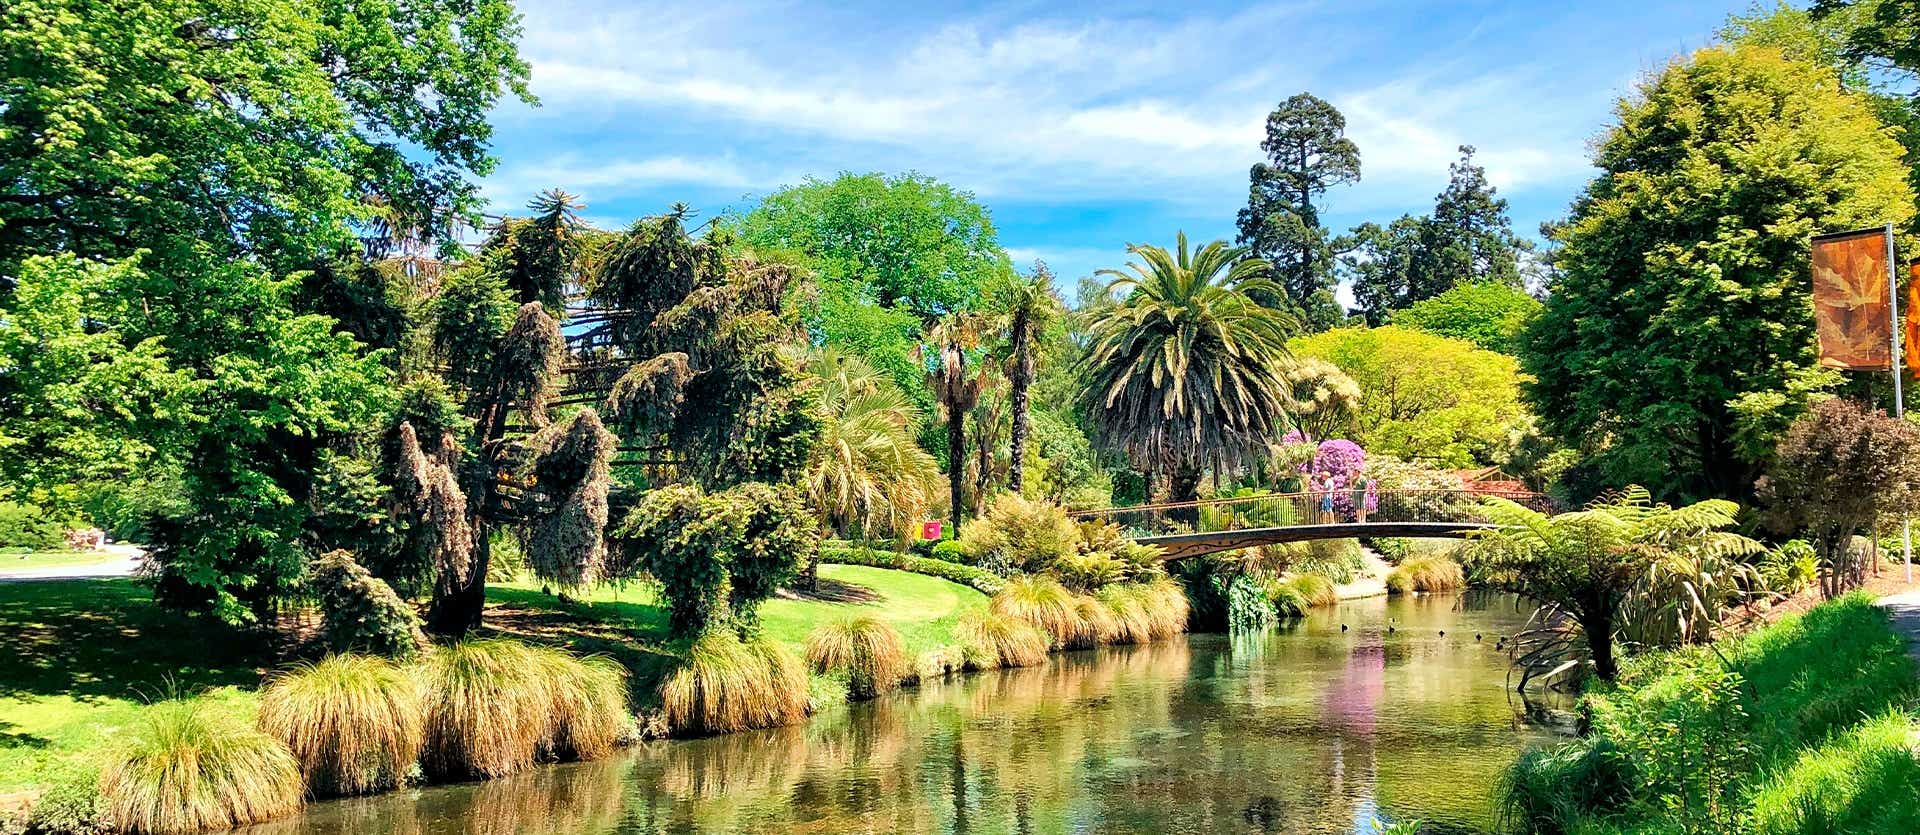 Jardín Botánico <span class="iconos separador"></span> Christchurch 